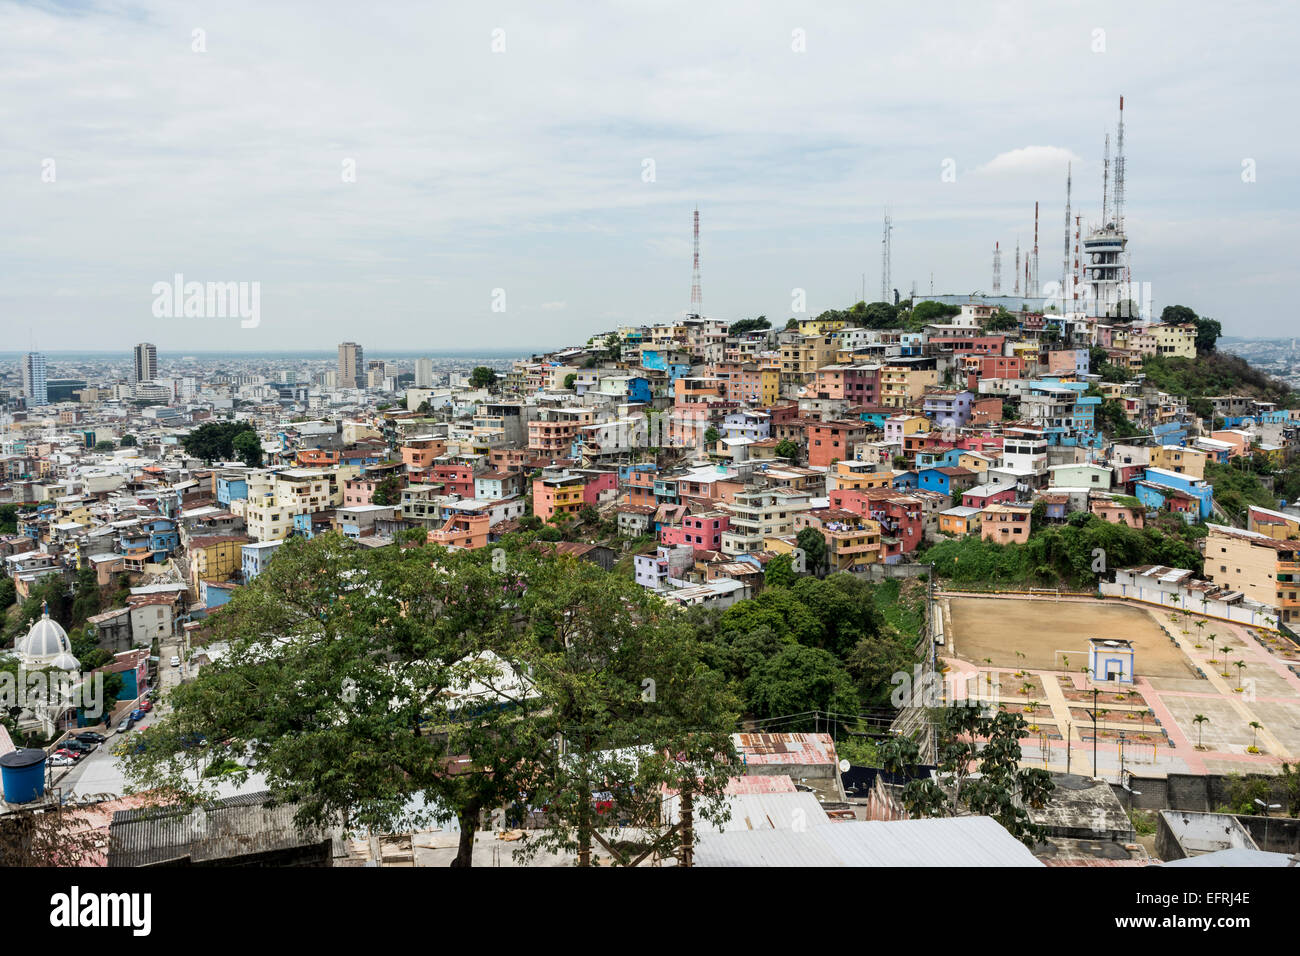 Town of Guayaquil, Ecuador Stock Photo